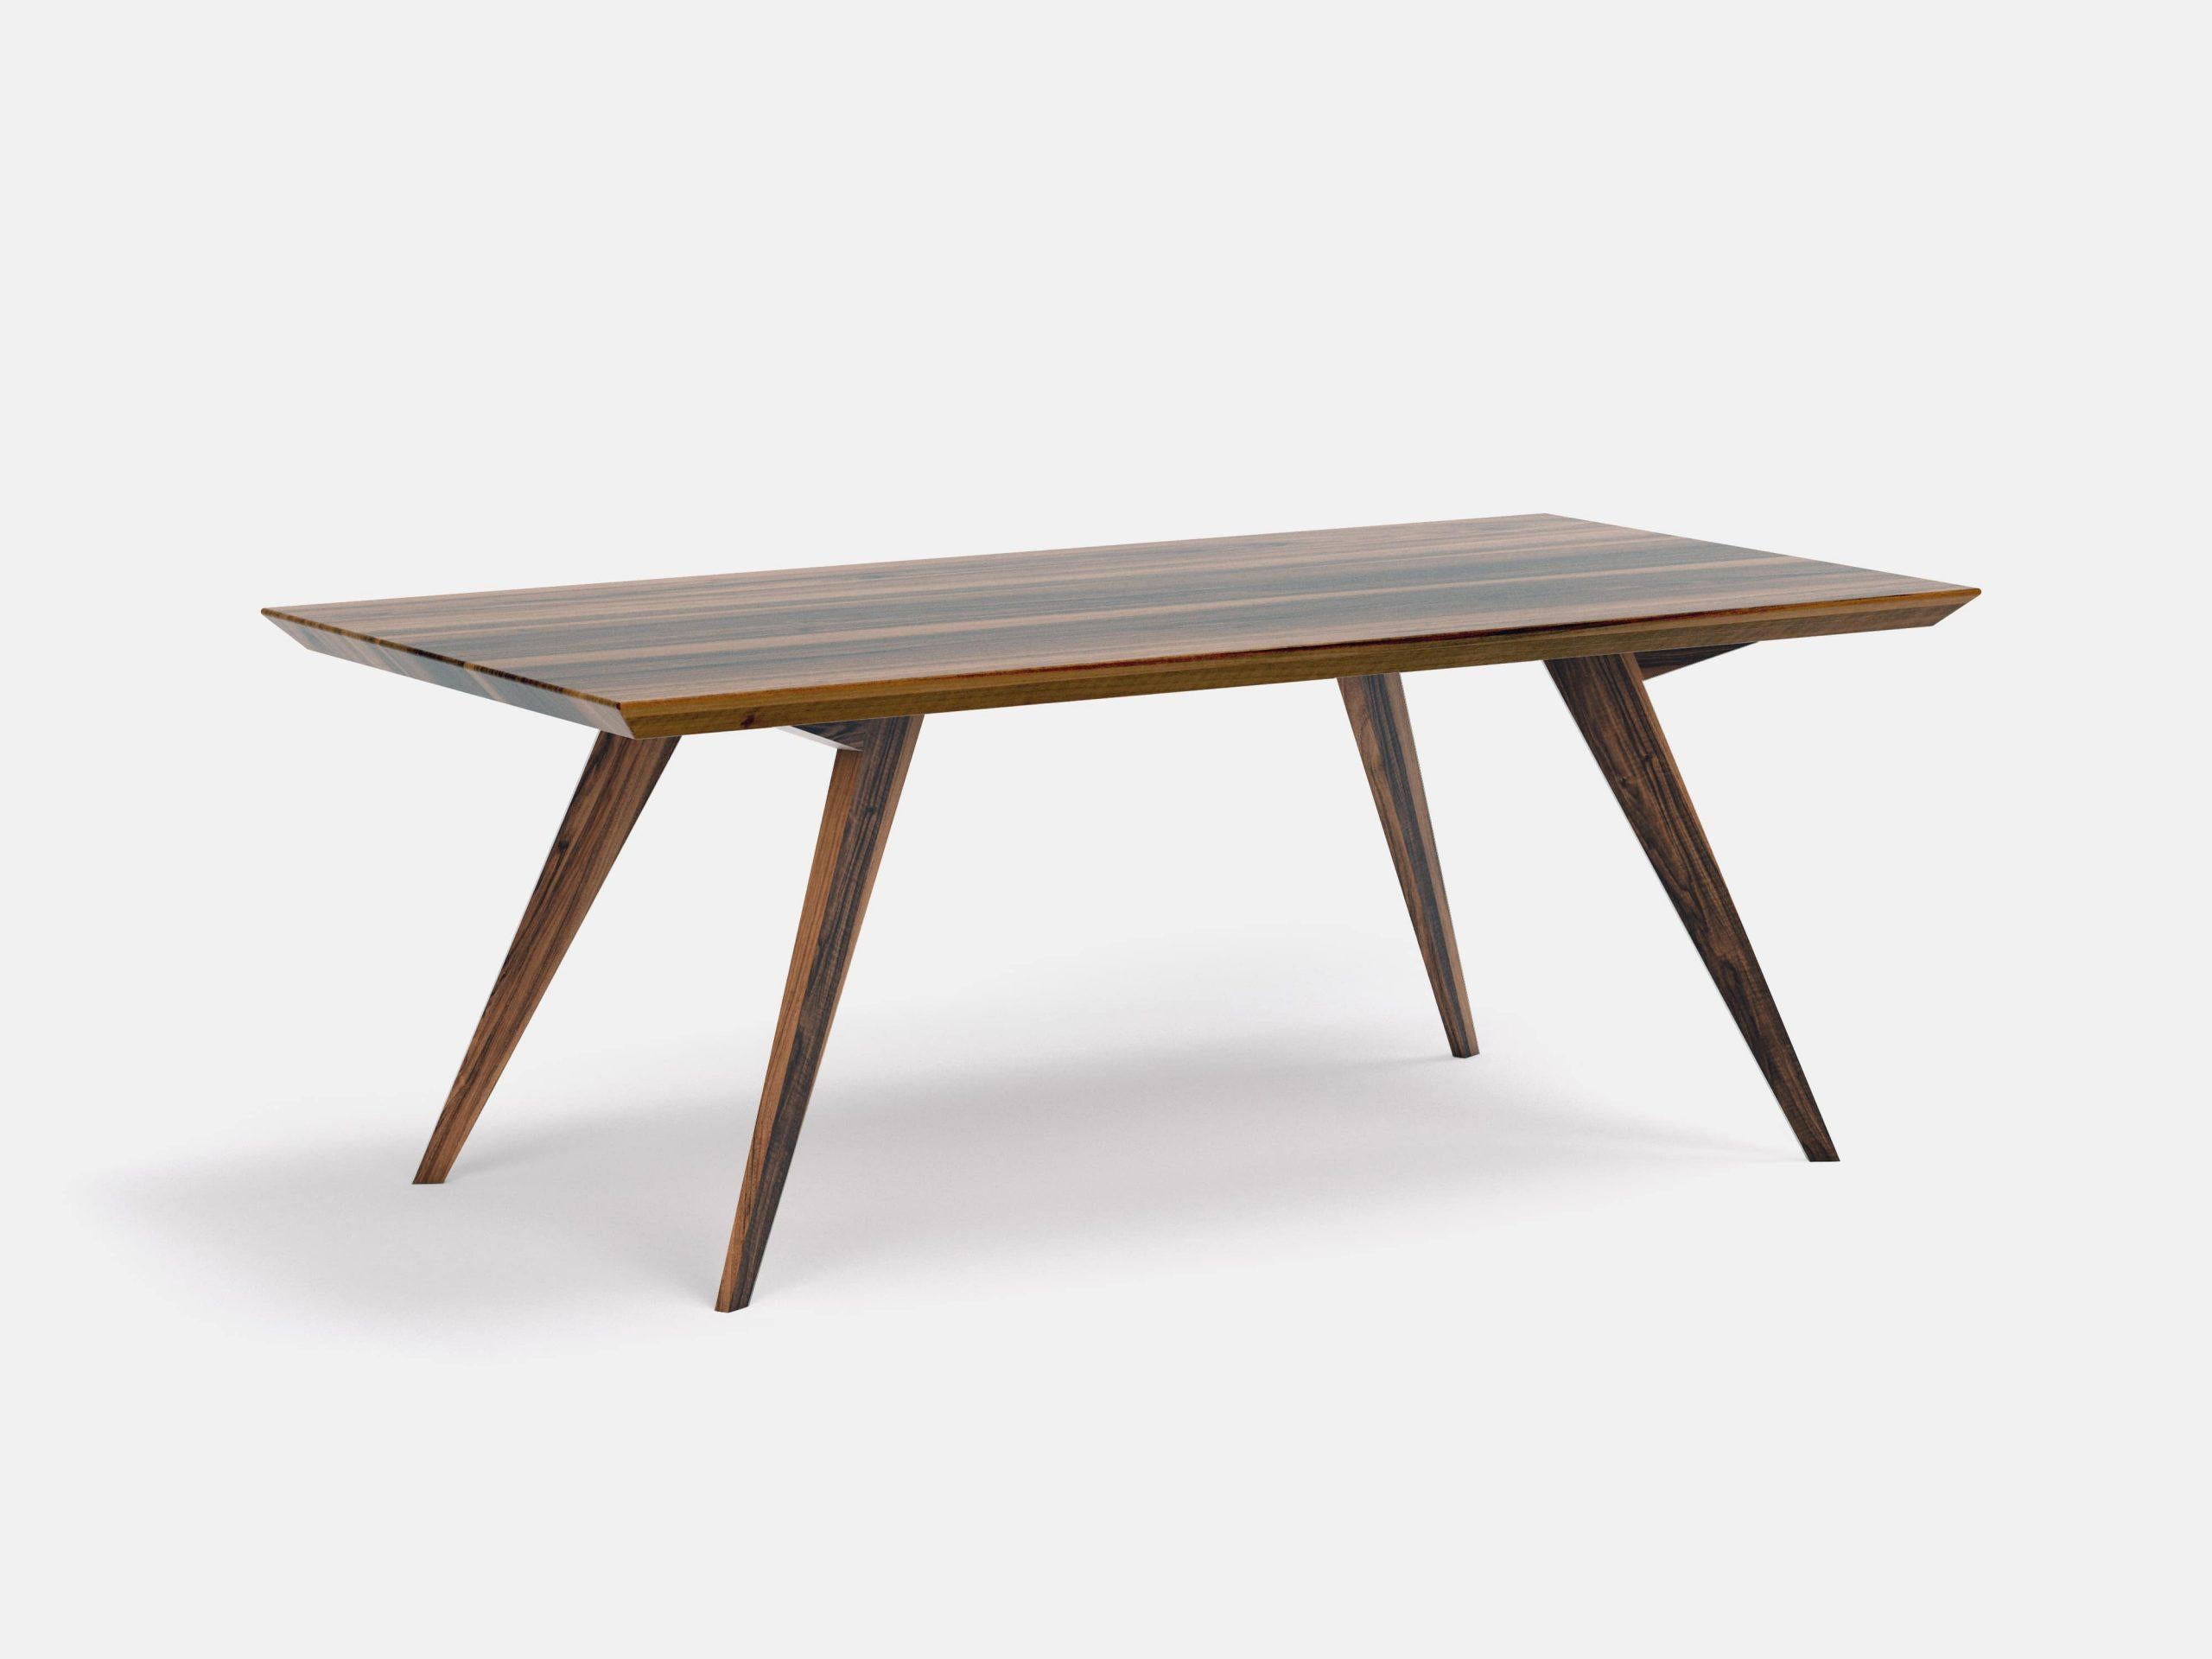 Table de salle à manger minimaliste en noyer
Dimensions : L 160 x D 100 x H 75 cm
MATERIAL : Noyer américain 100% bois massif

La table Roly-Poly est la preuve que le design permet de créer de la légèreté et de la simplicité, même lorsque les